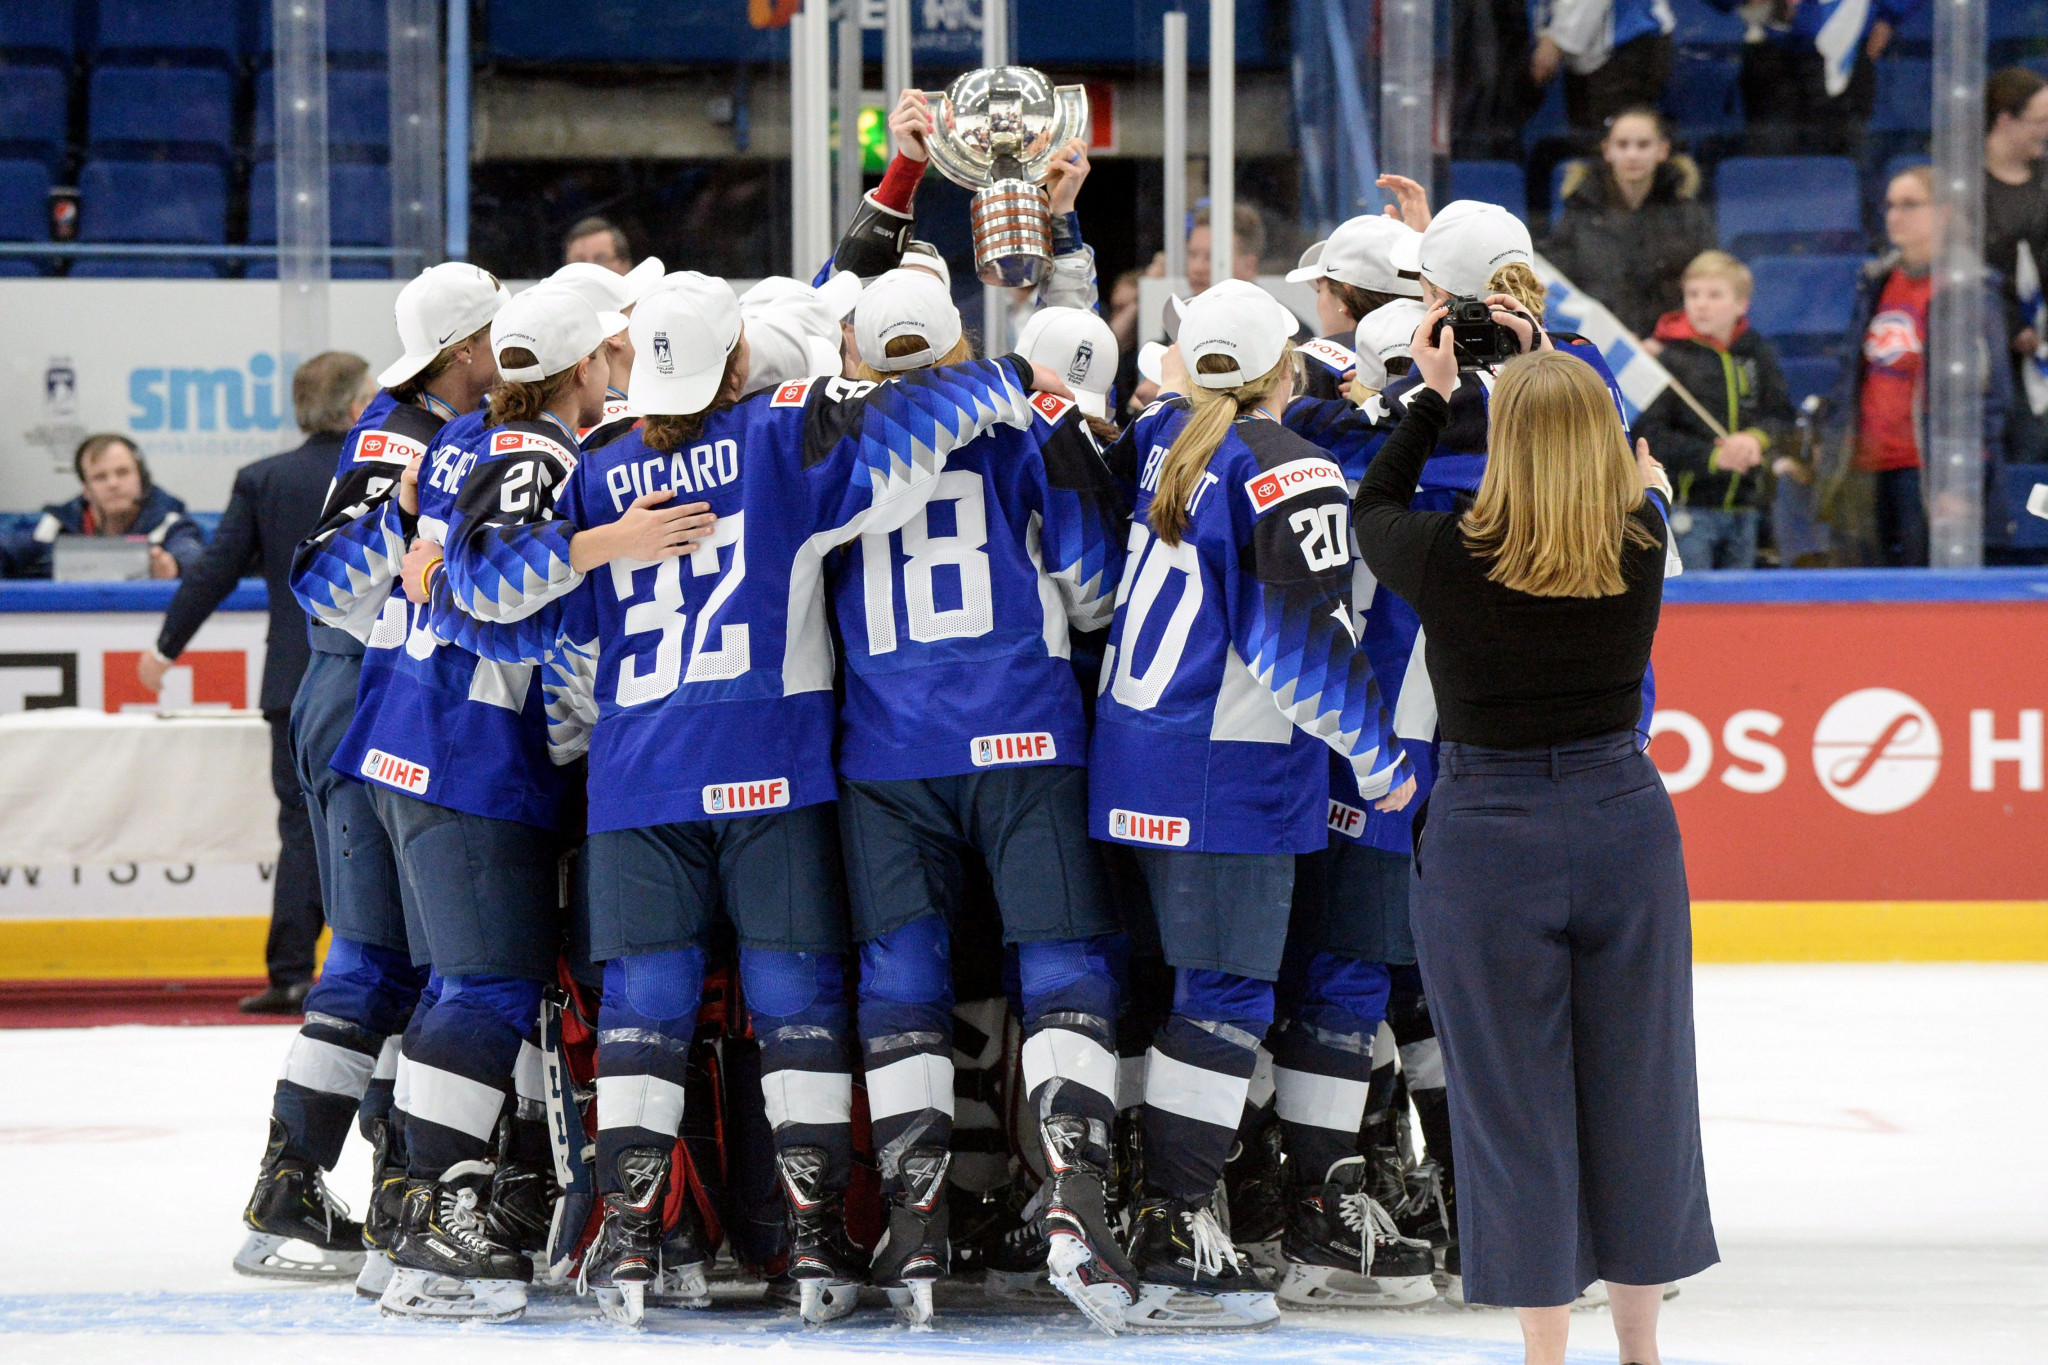 Women’s World Ice Hockey Championship postponed due to coronavirus concerns